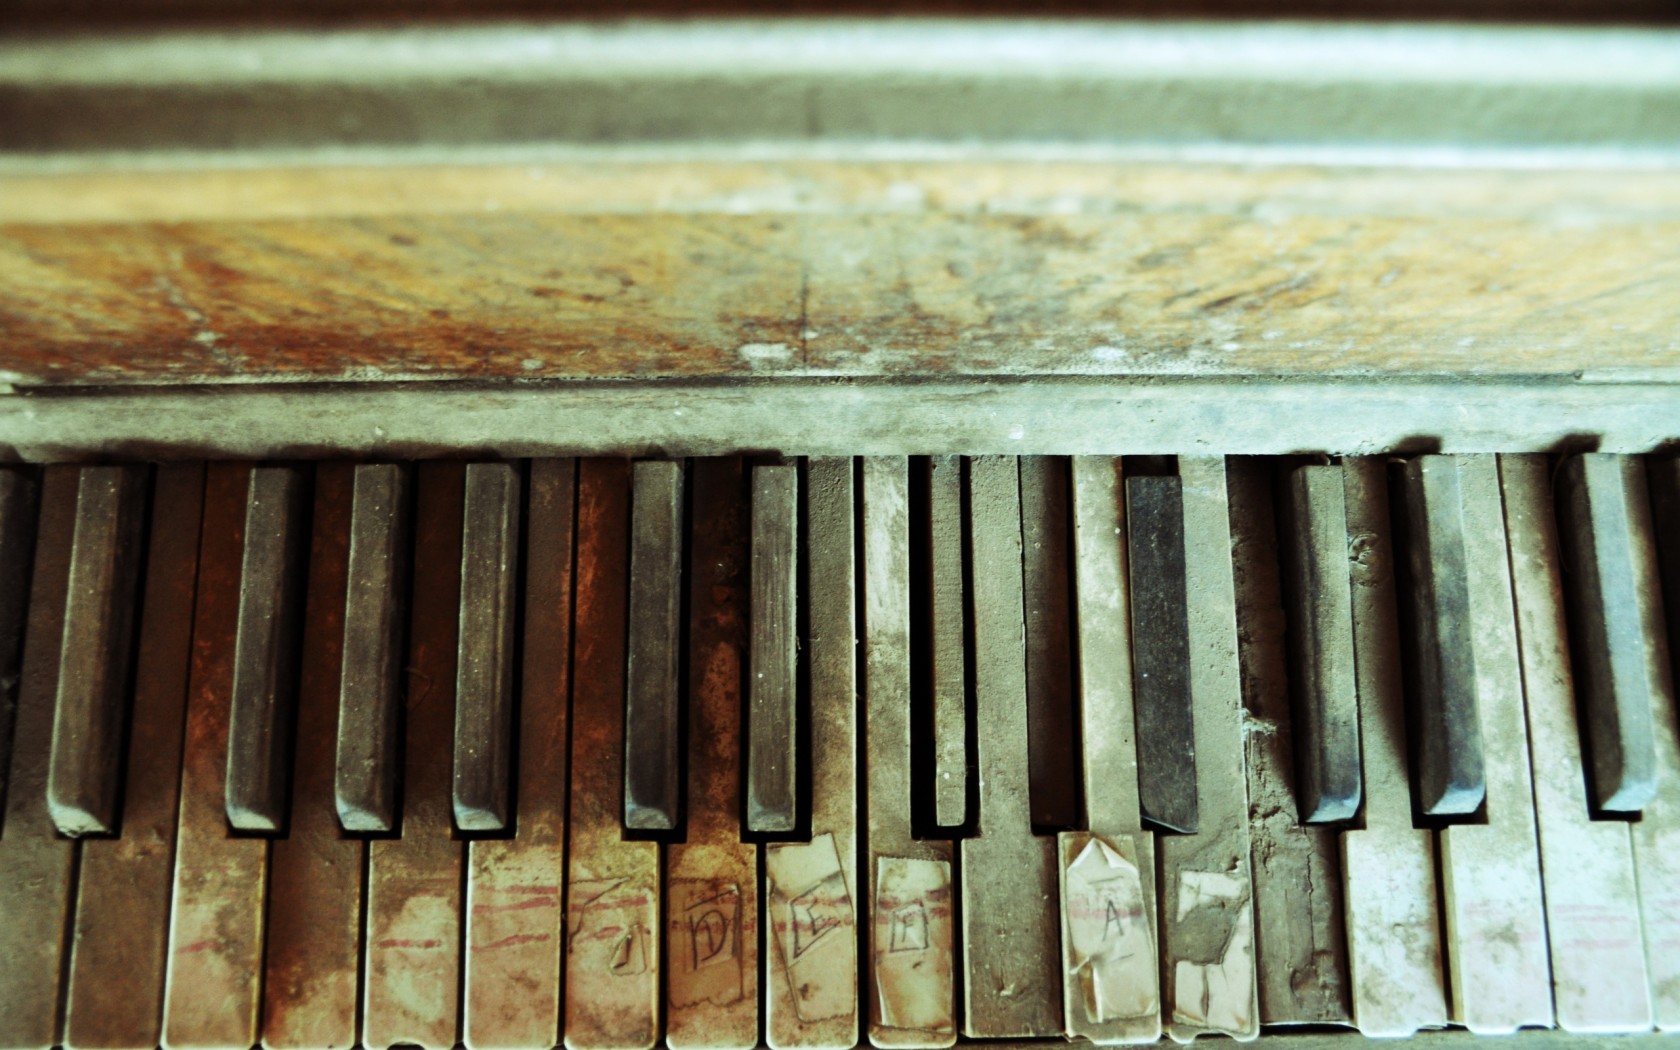 Заброшенное пианино